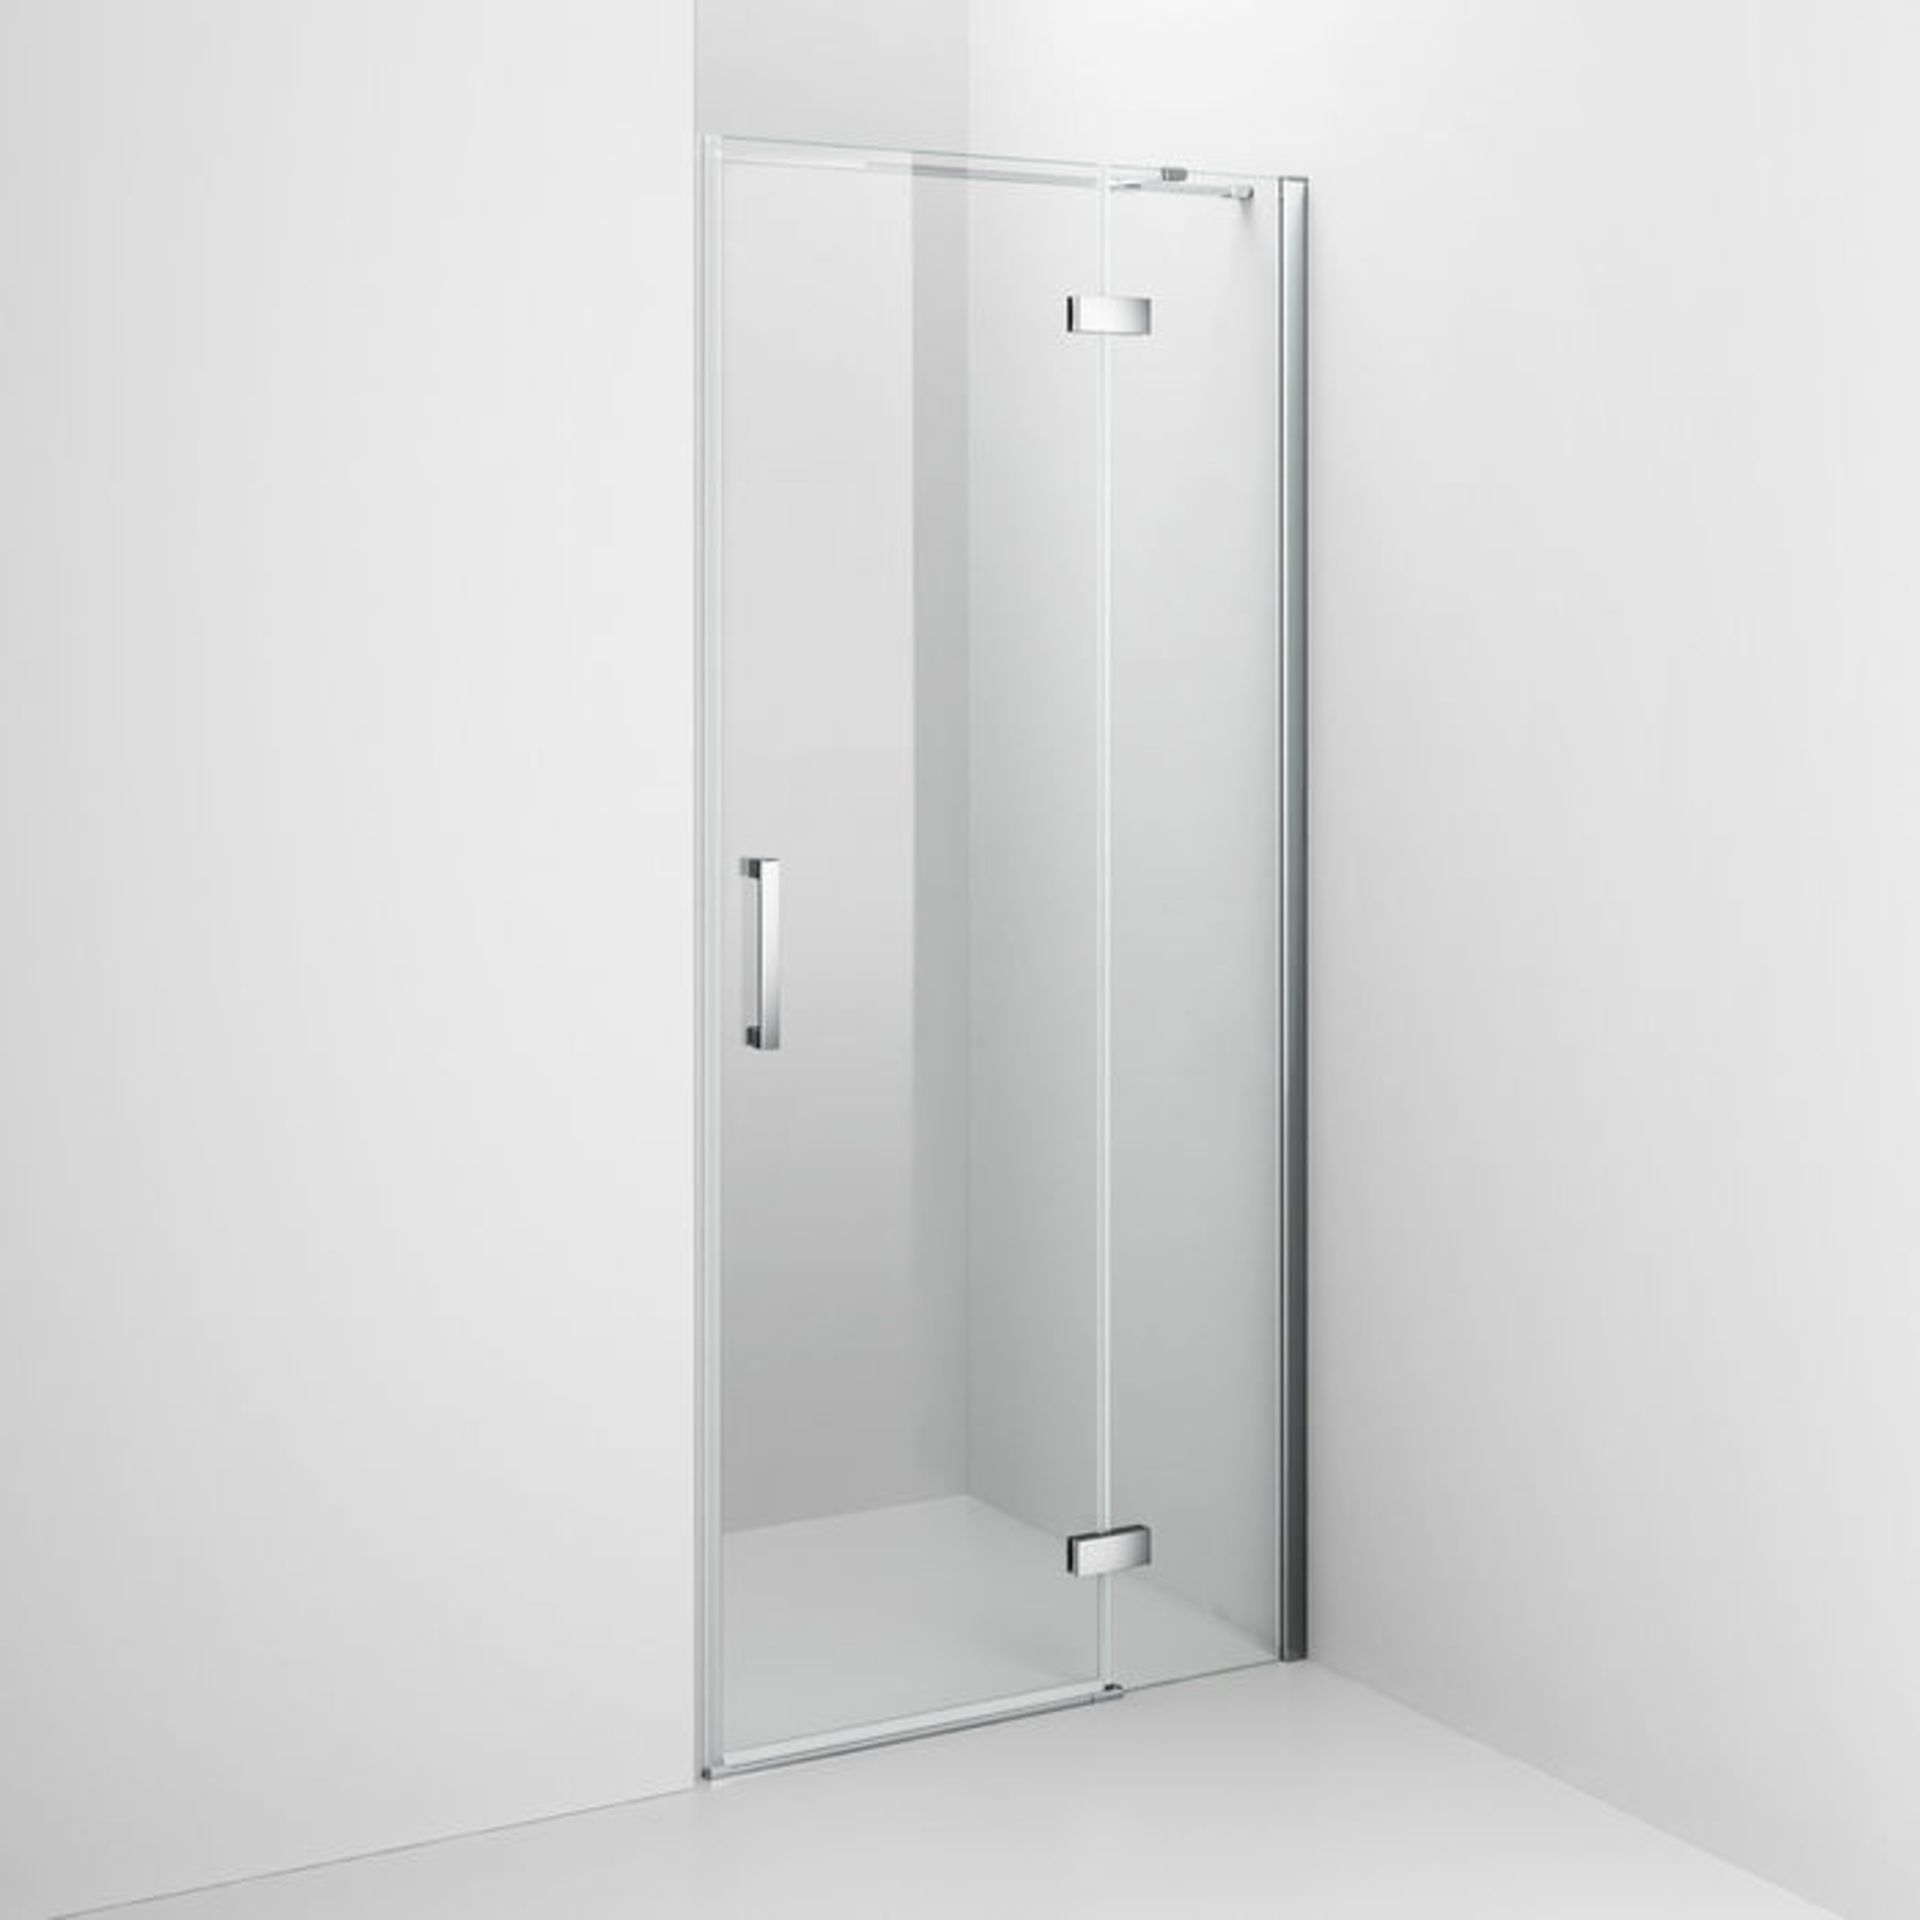 (AH20) 1200mm - 8mm - Premium EasyClean Hinged Shower Door. RRP £359.99. 8mm EasyClean glass - Our - Image 4 of 4